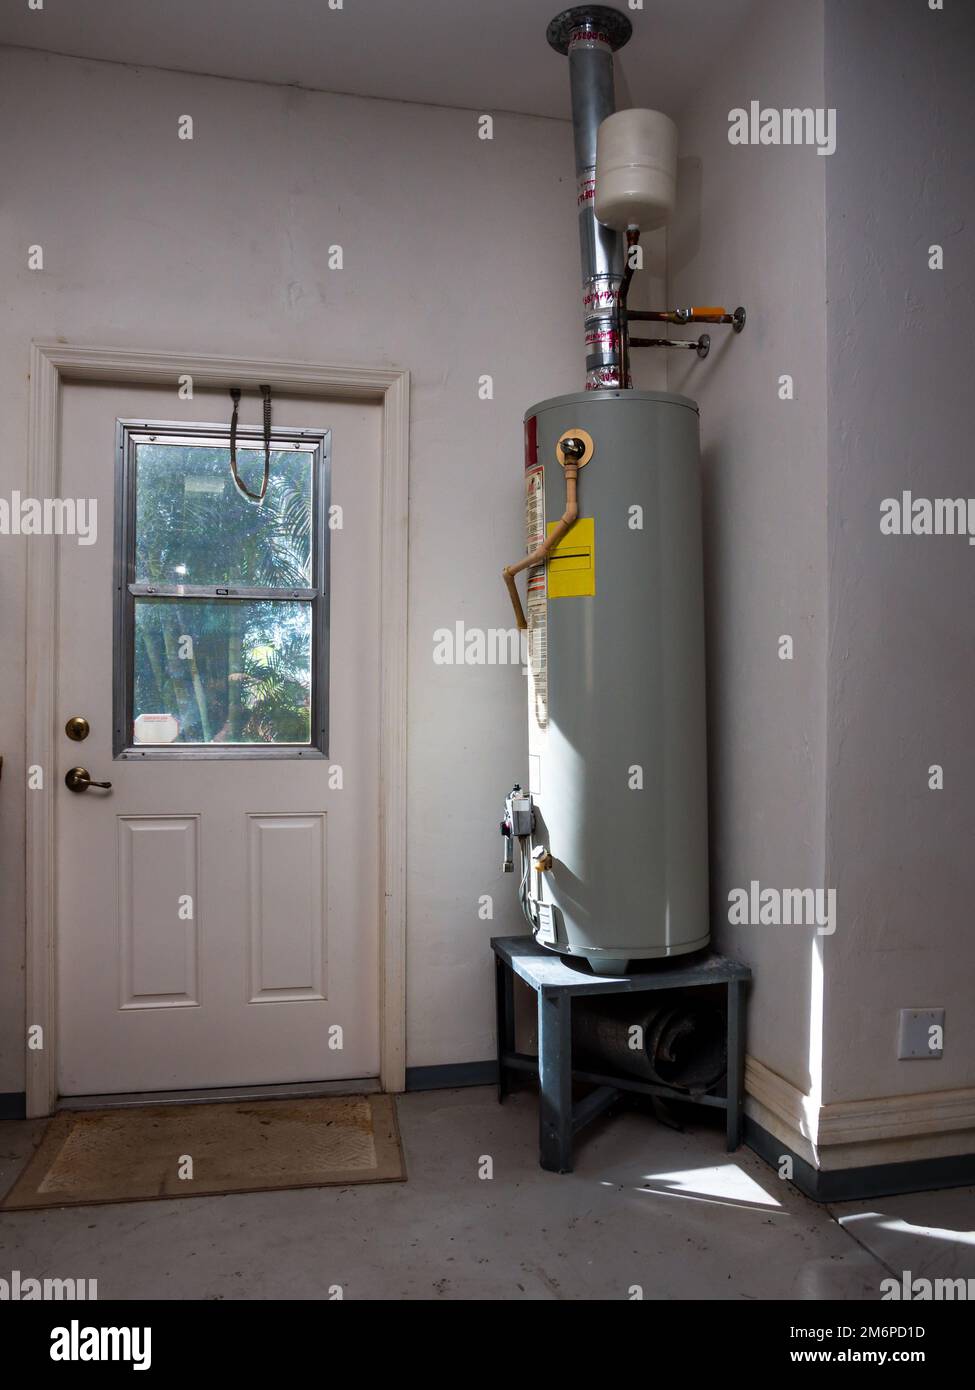 Tanque del calentador de agua fotografías e imágenes de alta resolución -  Alamy